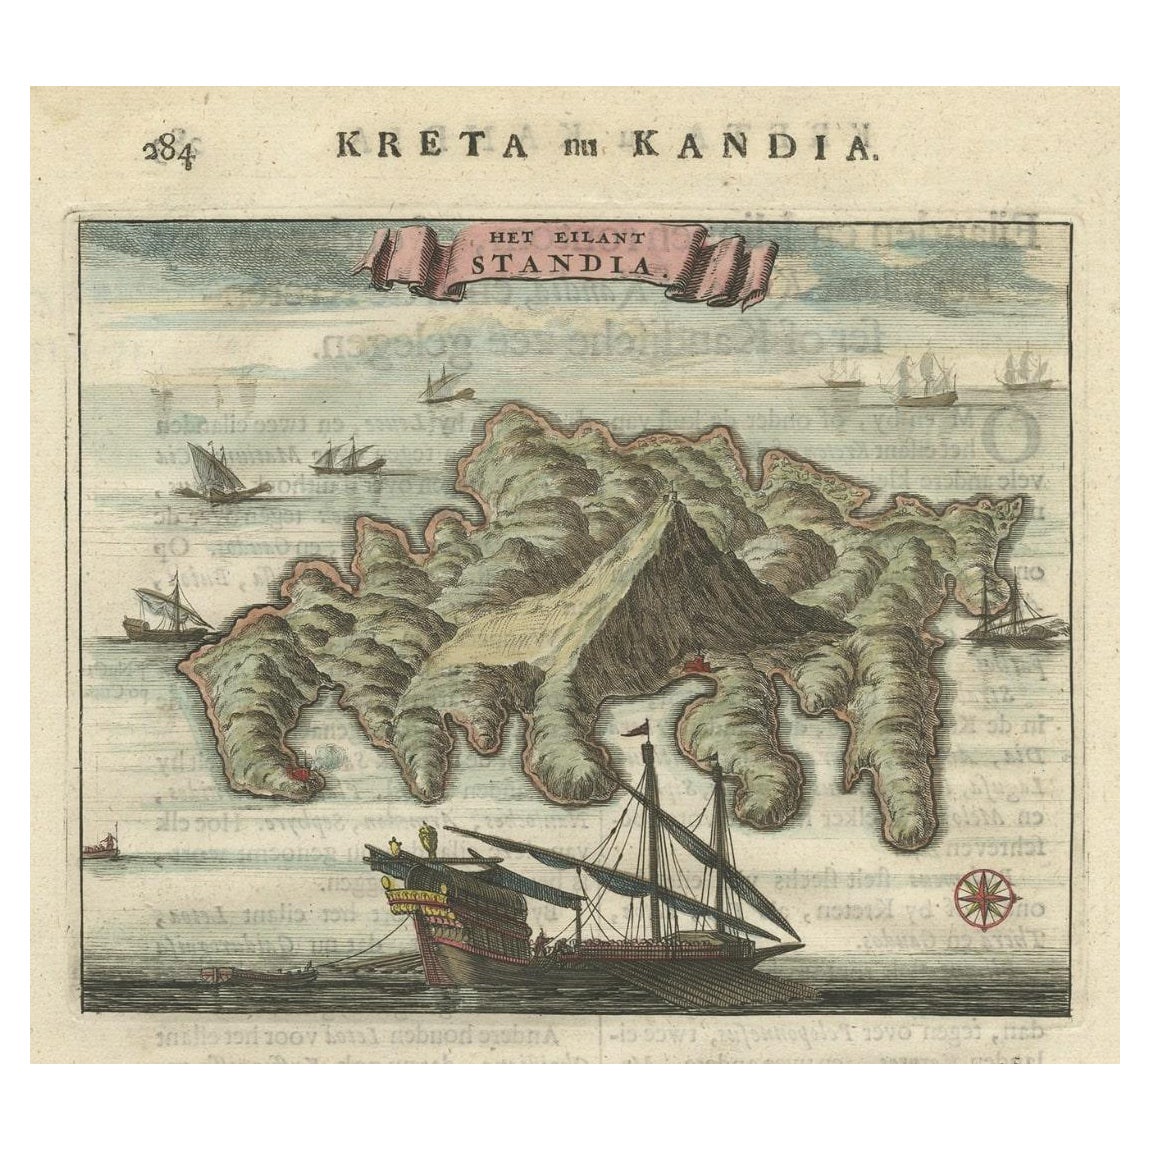 Ancienne estampe de Standia, une île grecque « Heraklion, Crète, Grèce, Balkans », 1688